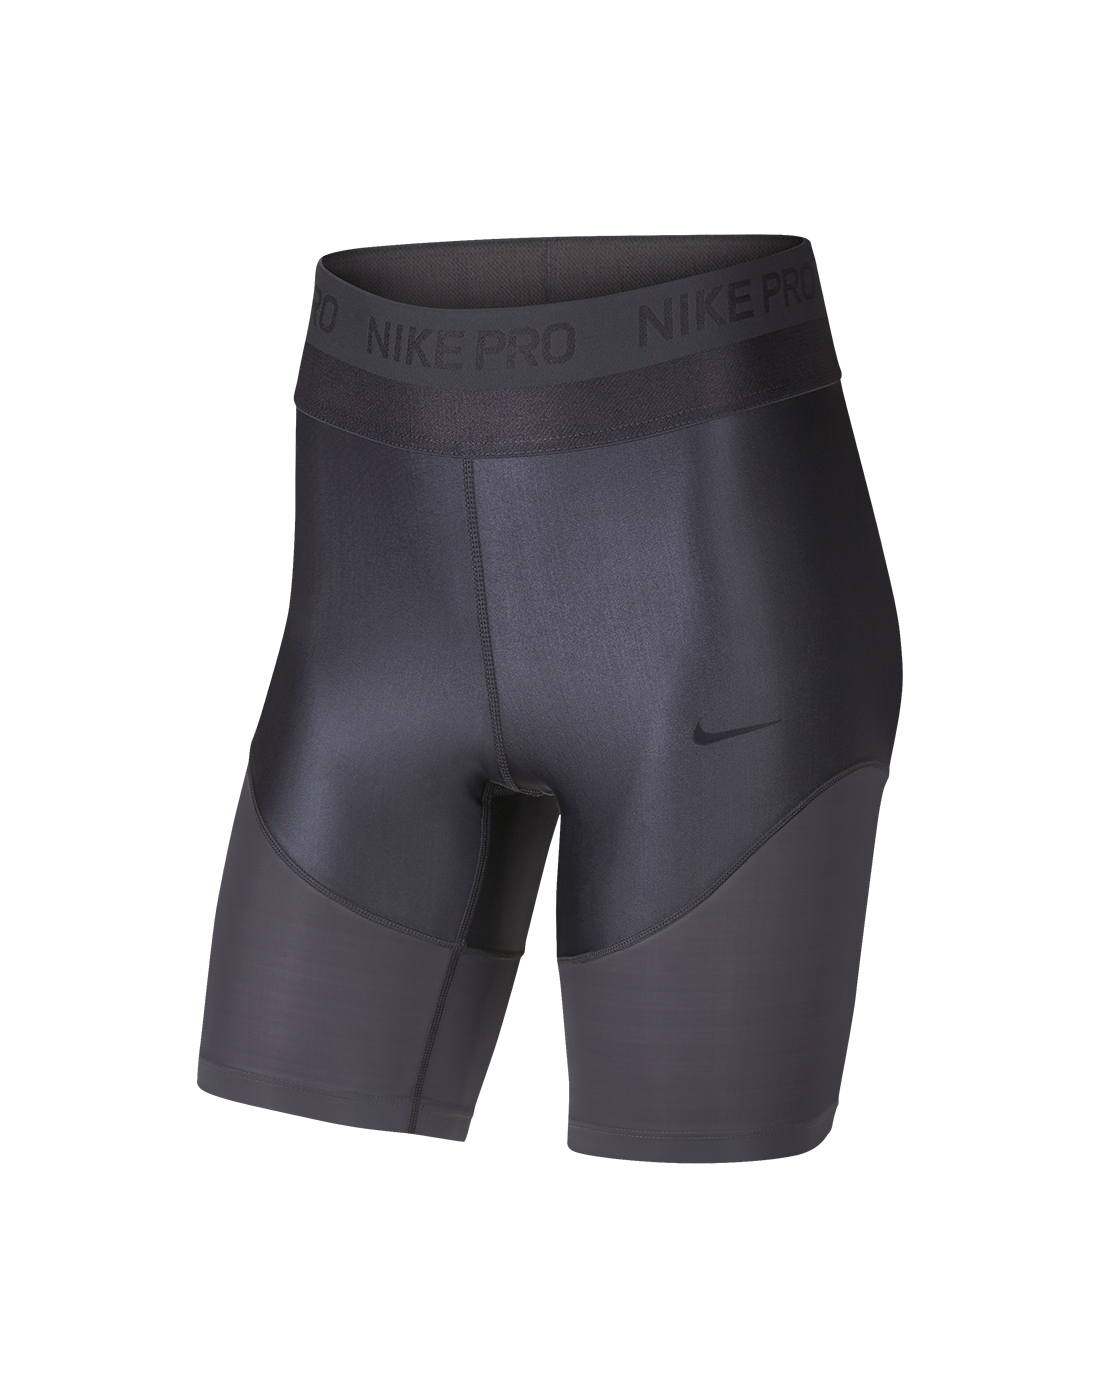 nike pro women's 8 inch shorts